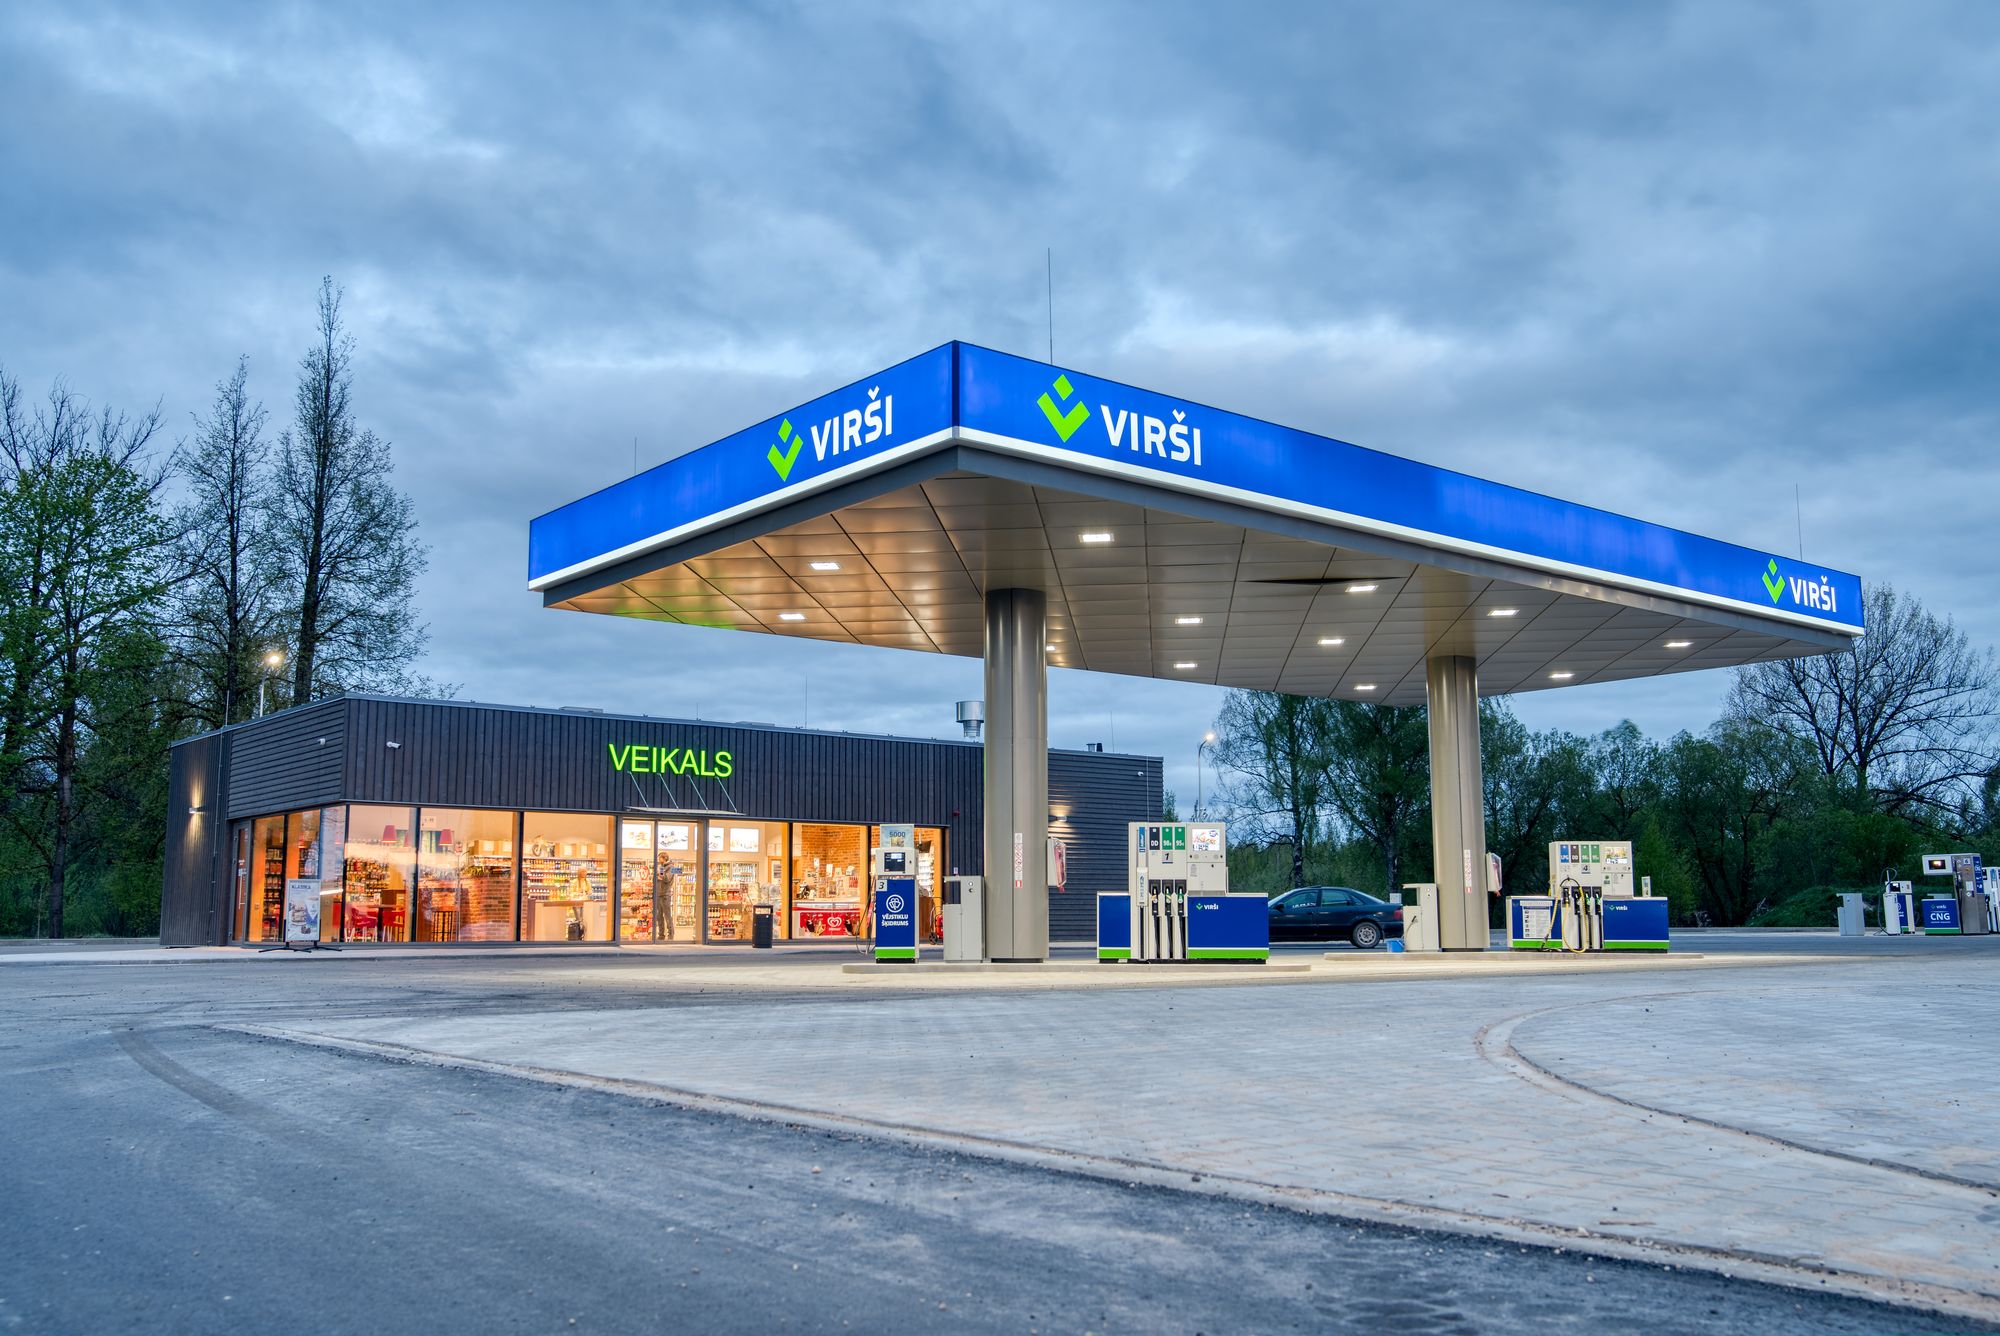 Virši вложила в строительство АЗС с CNG СПГ-станции более одного миллиона евро